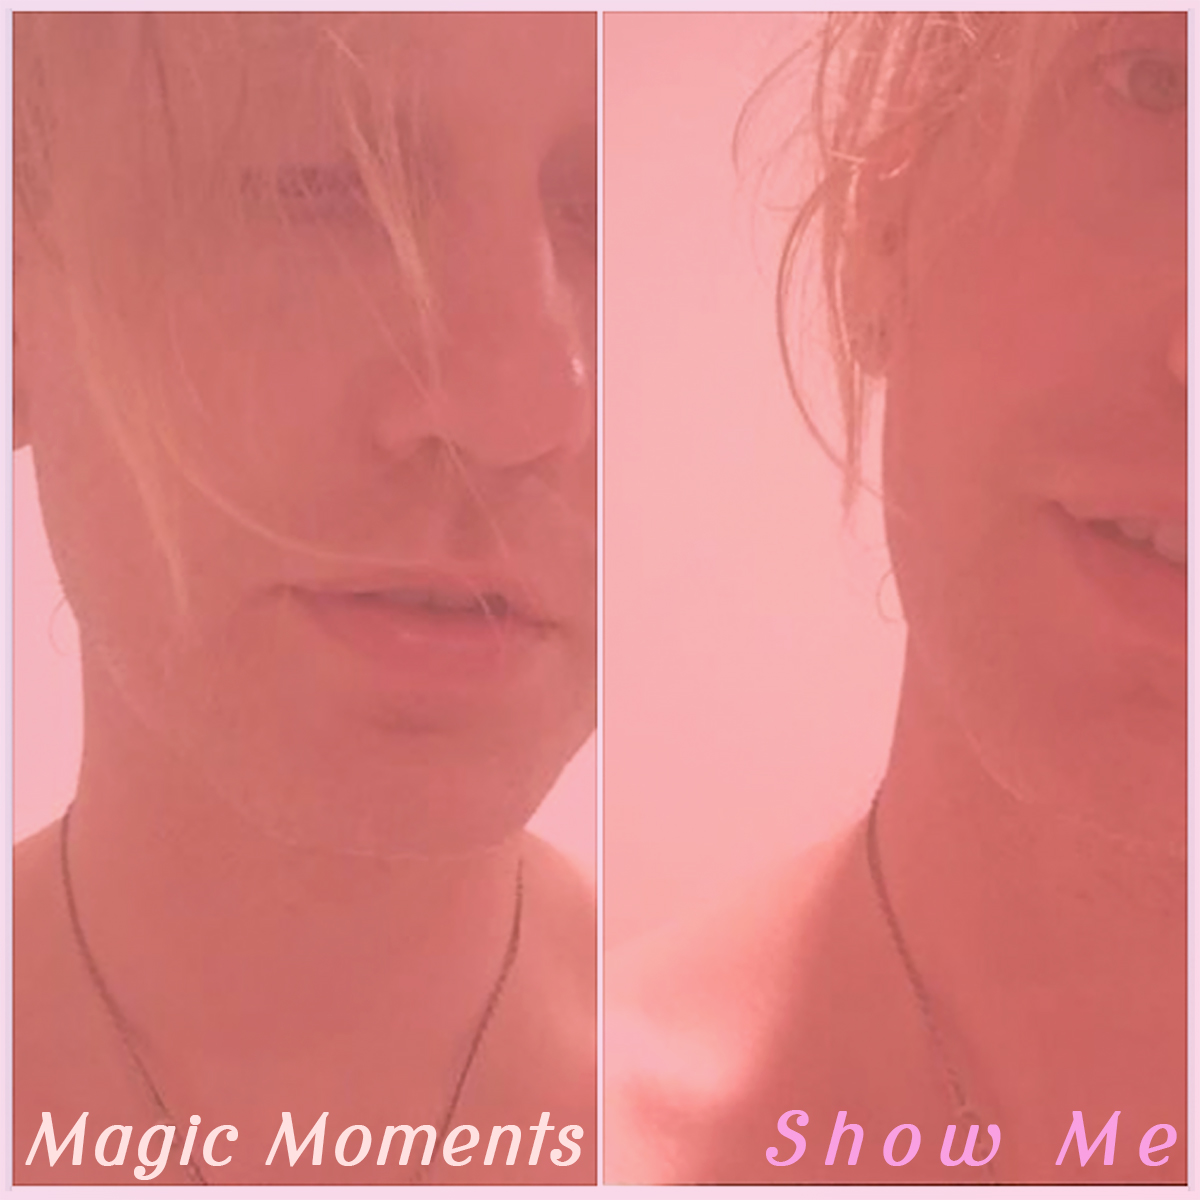 Magic Moments - Show Me cover art